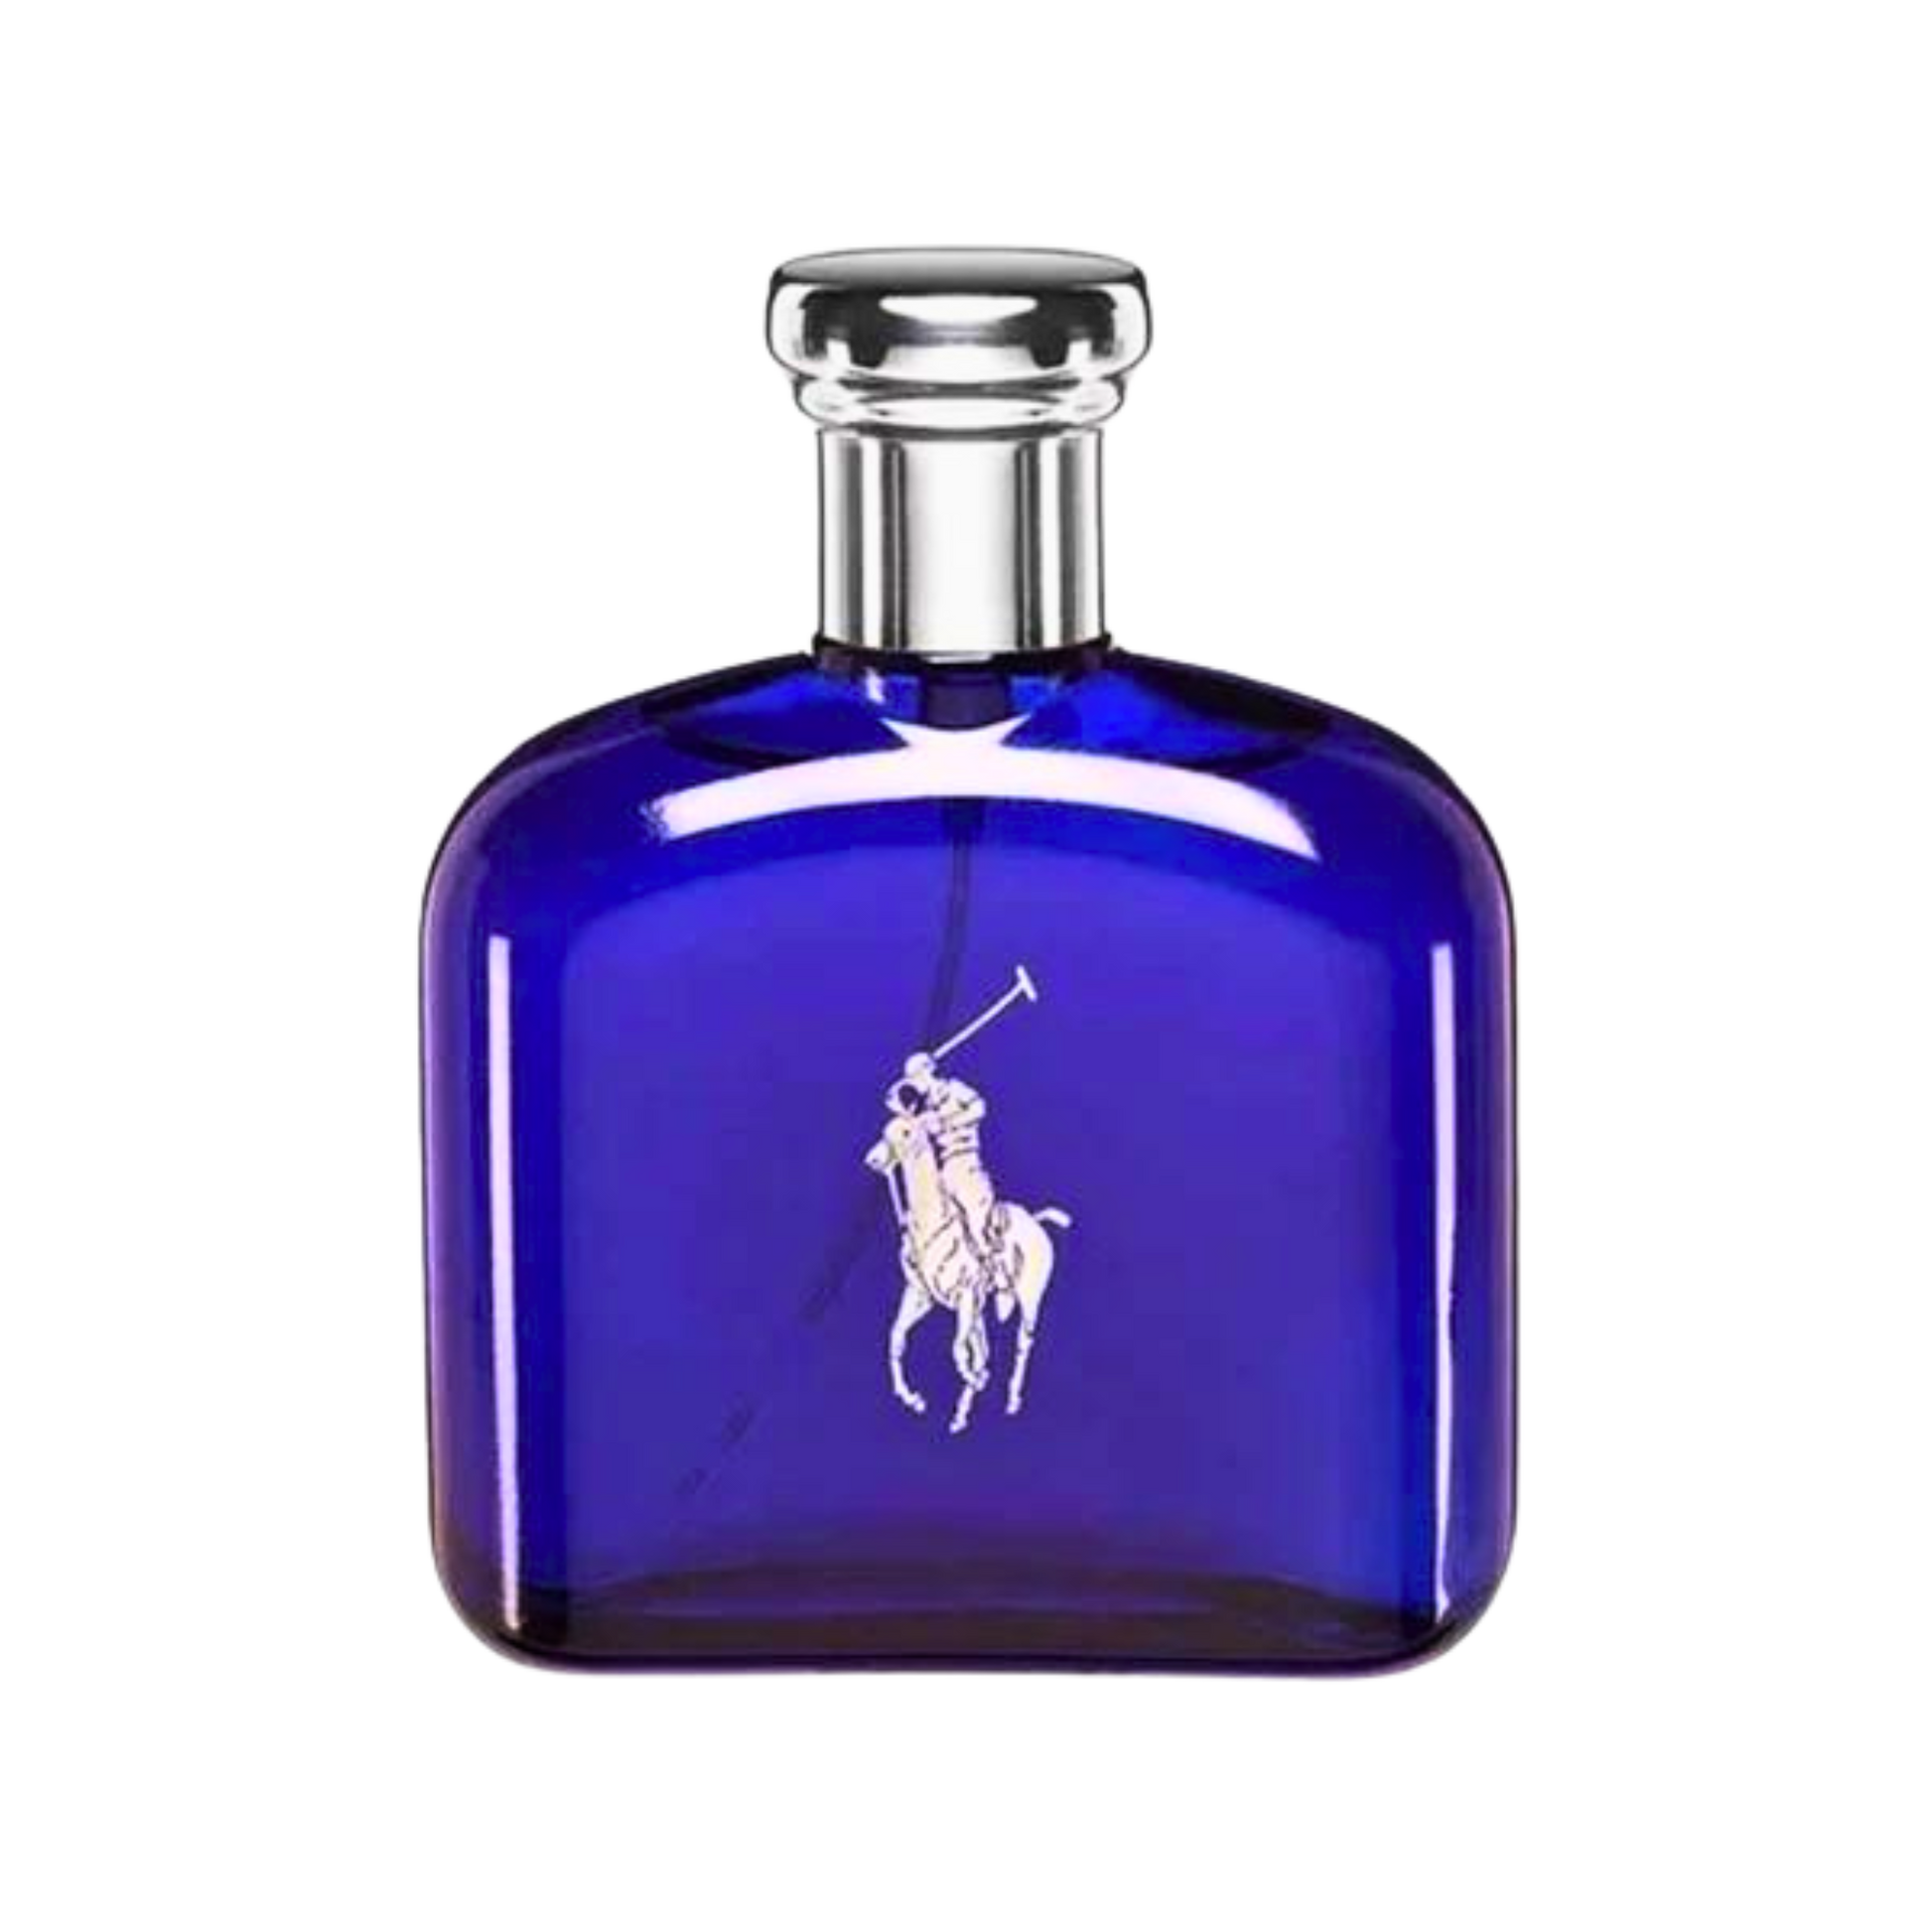 Polo Blue by Ralph Lauren for Men - 4.2 oz EDT Spray - Ralph Lauren - Fragrance